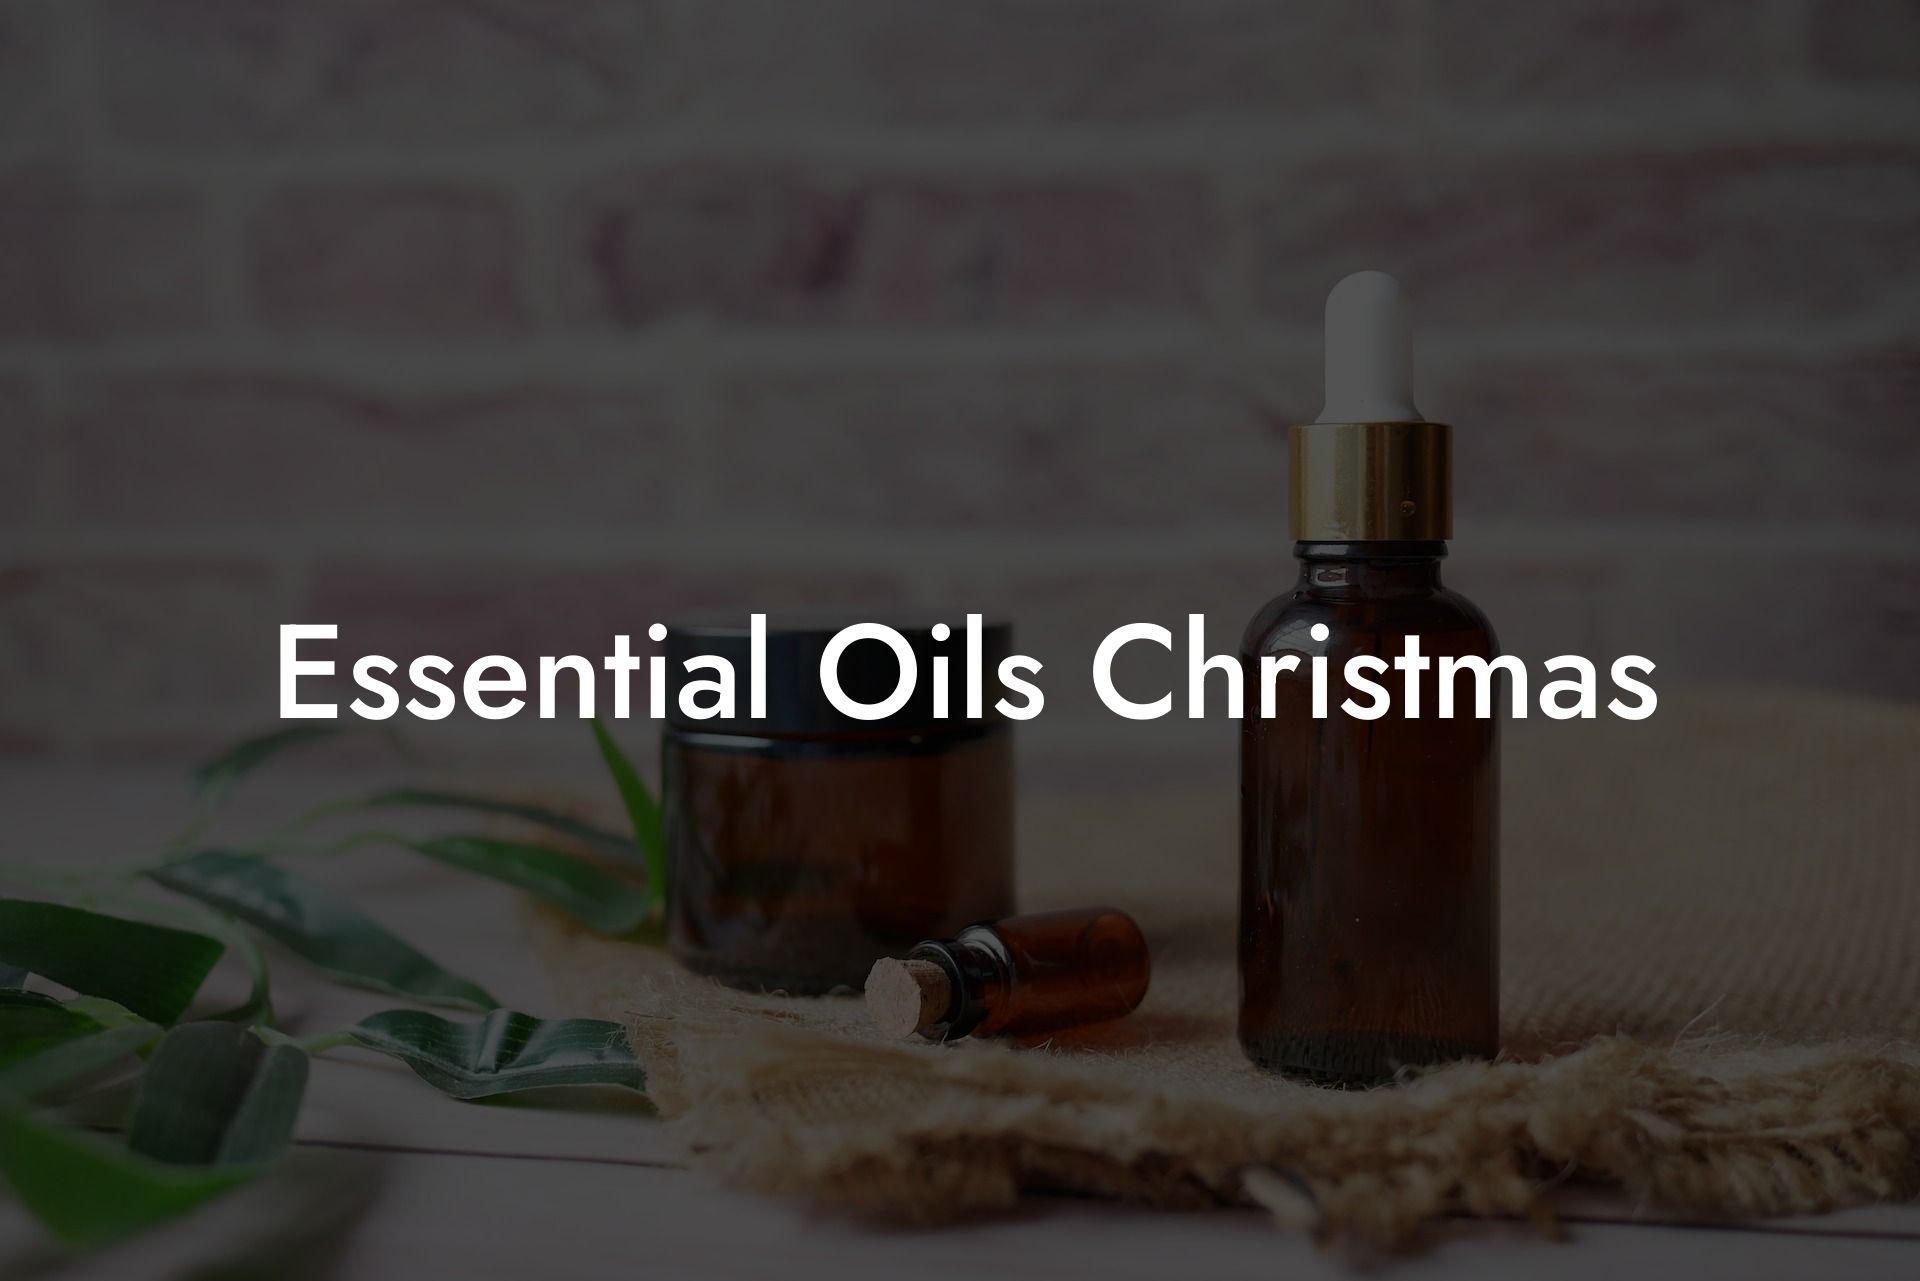 Essential Oils Christmas